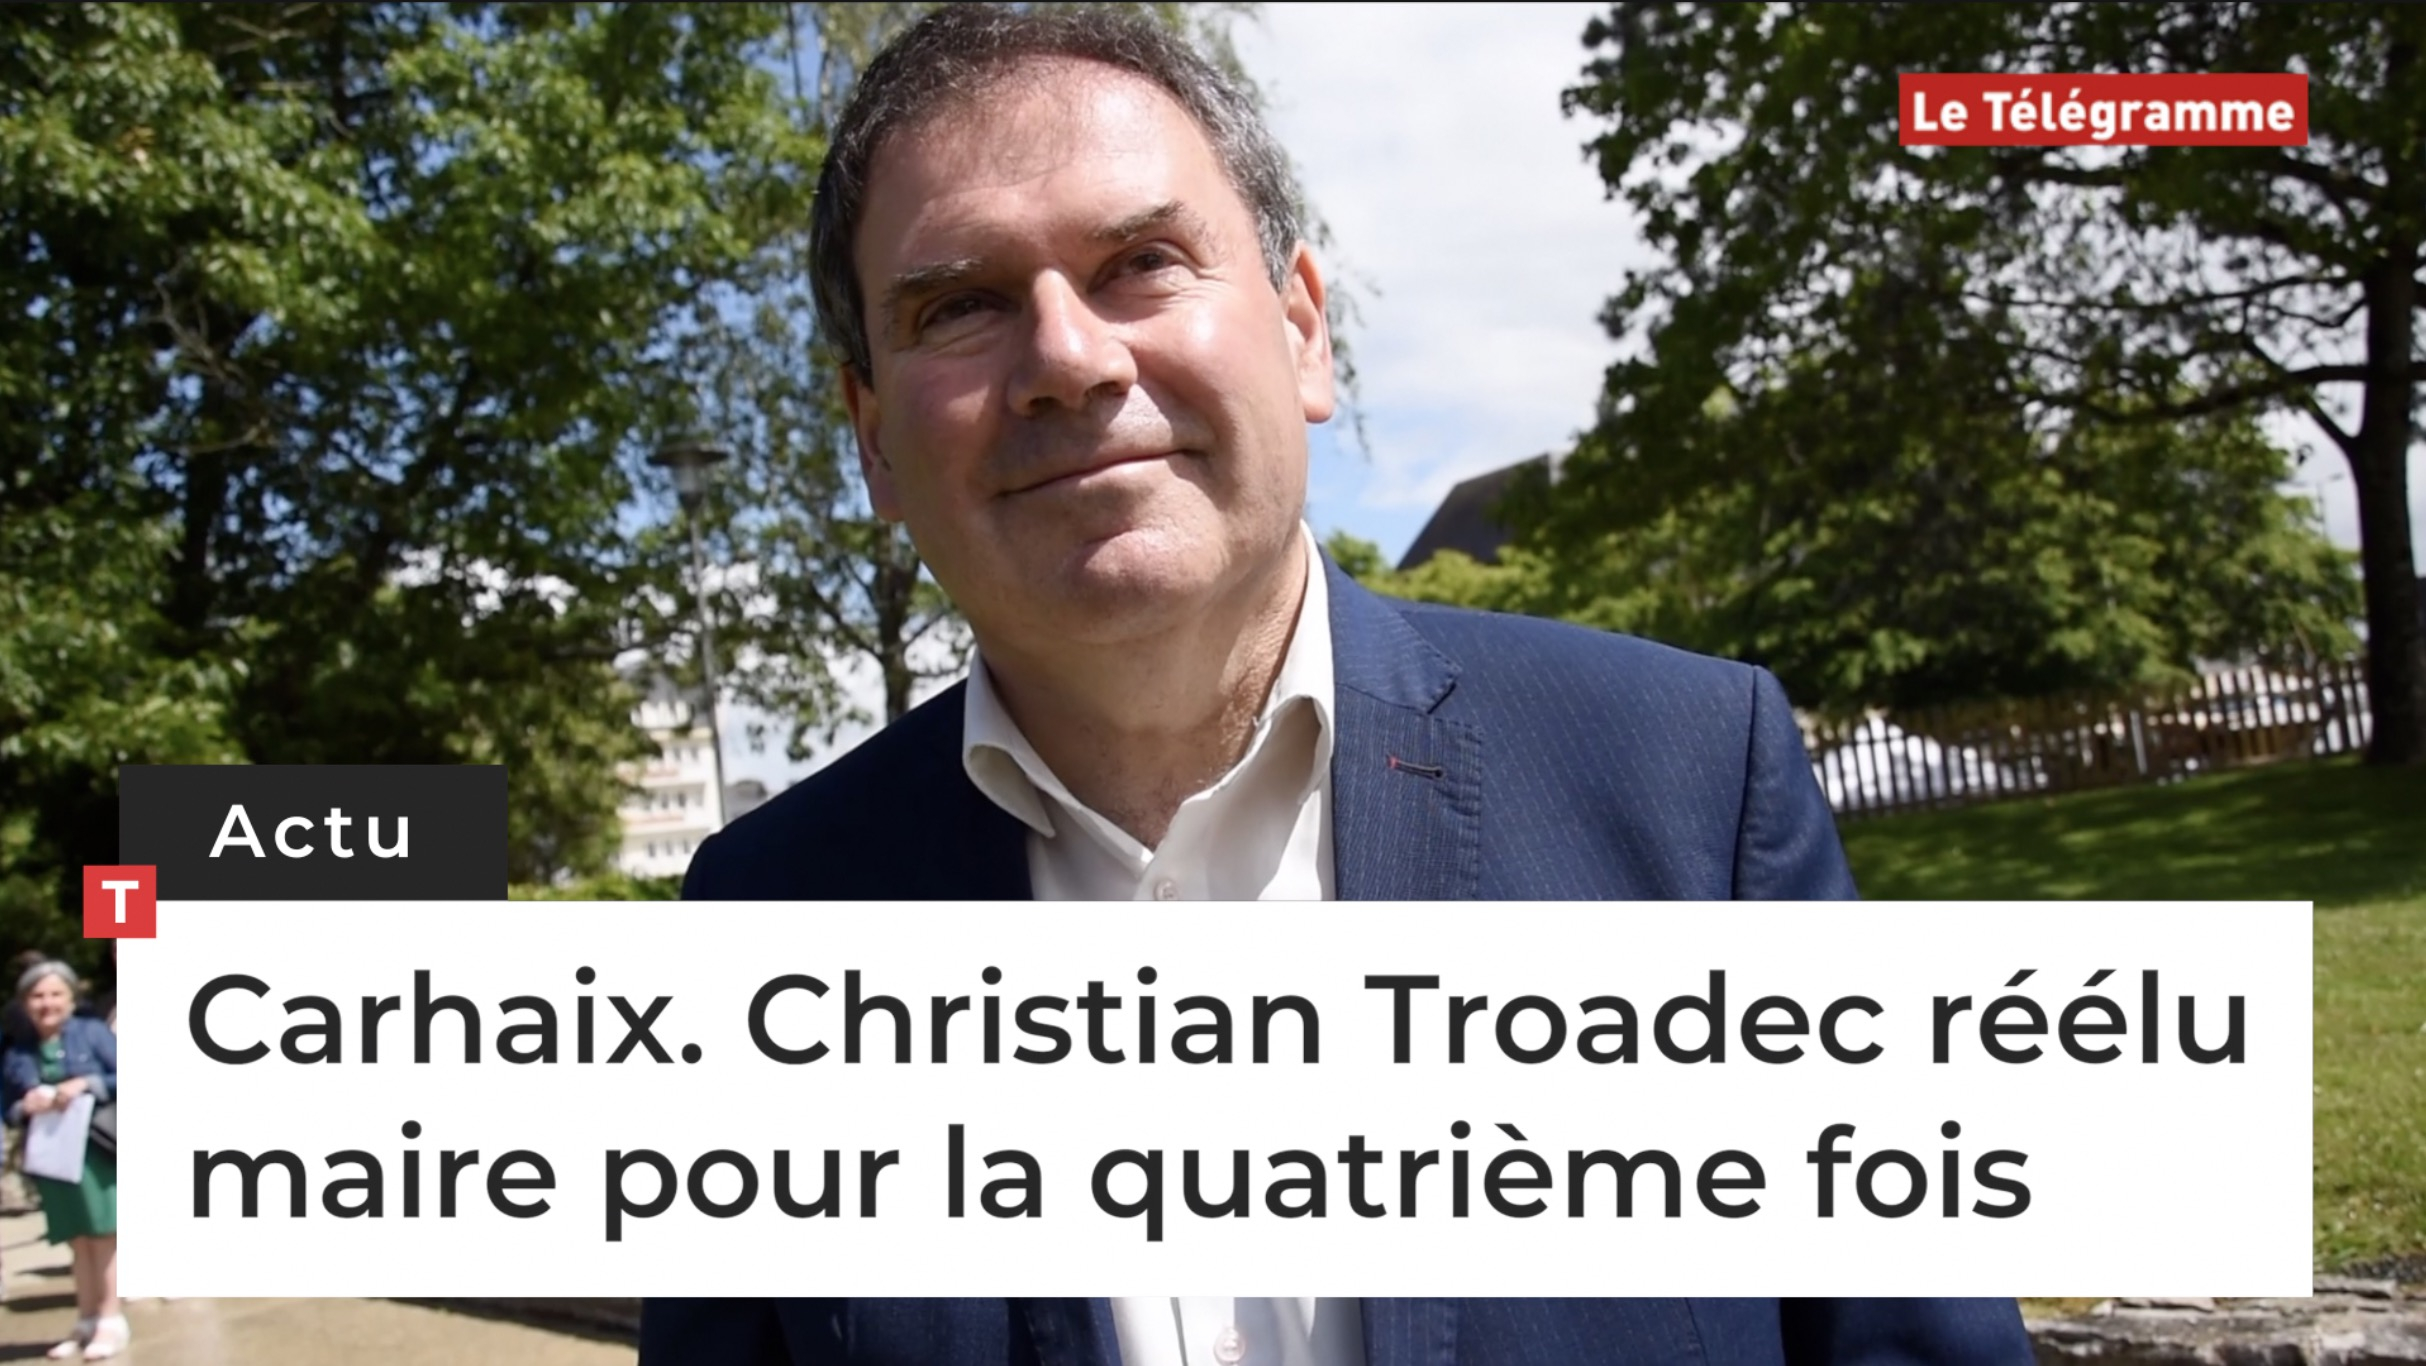 Carhaix. Christian Troadec réélu maire pour la quatrième fois (Le Télégramme)